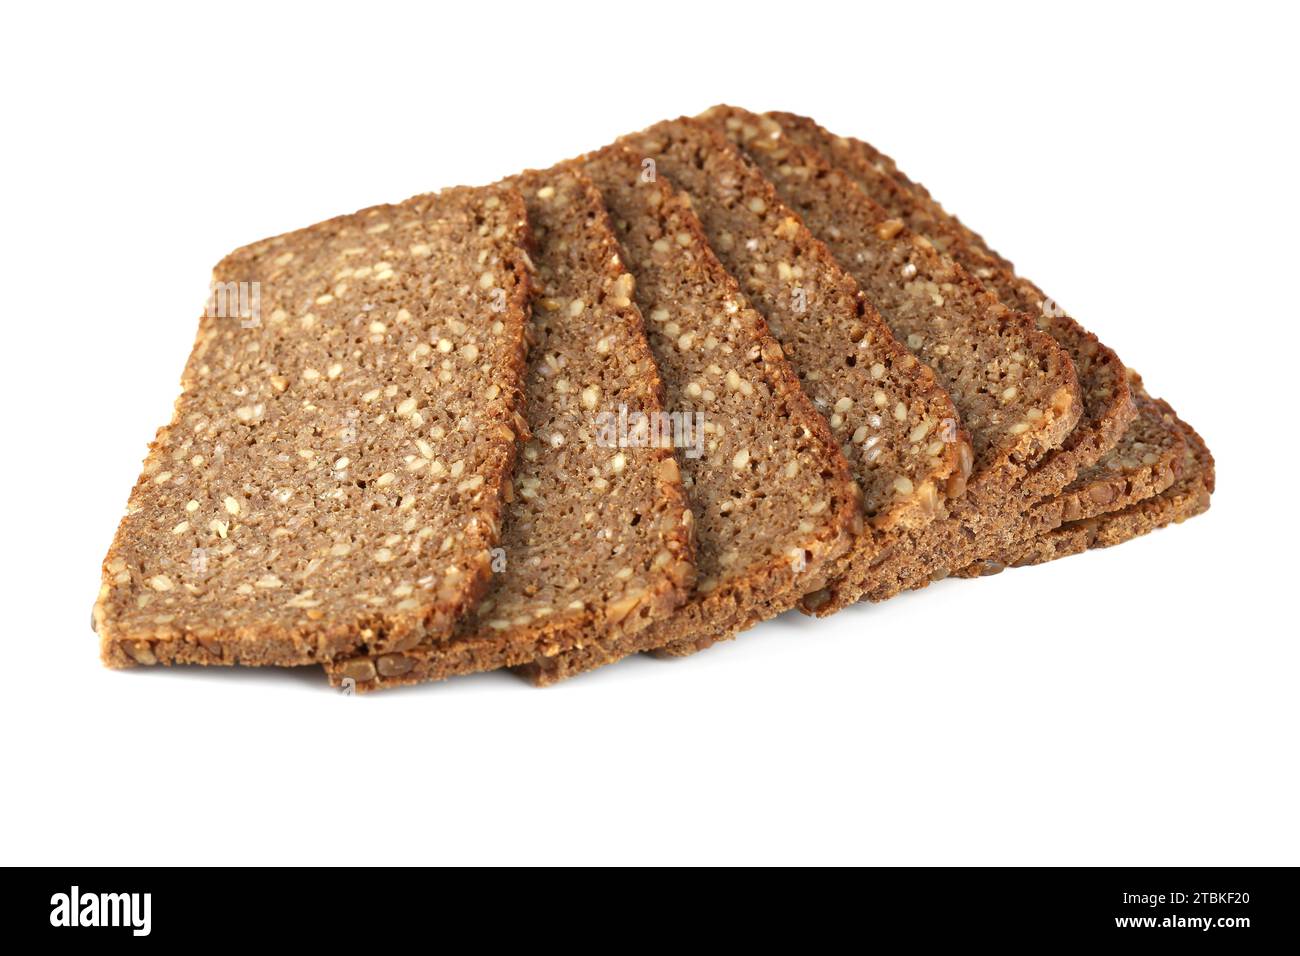 Tranches de pain avec des graines de tournesol isolées sur fond blanc. Banque D'Images